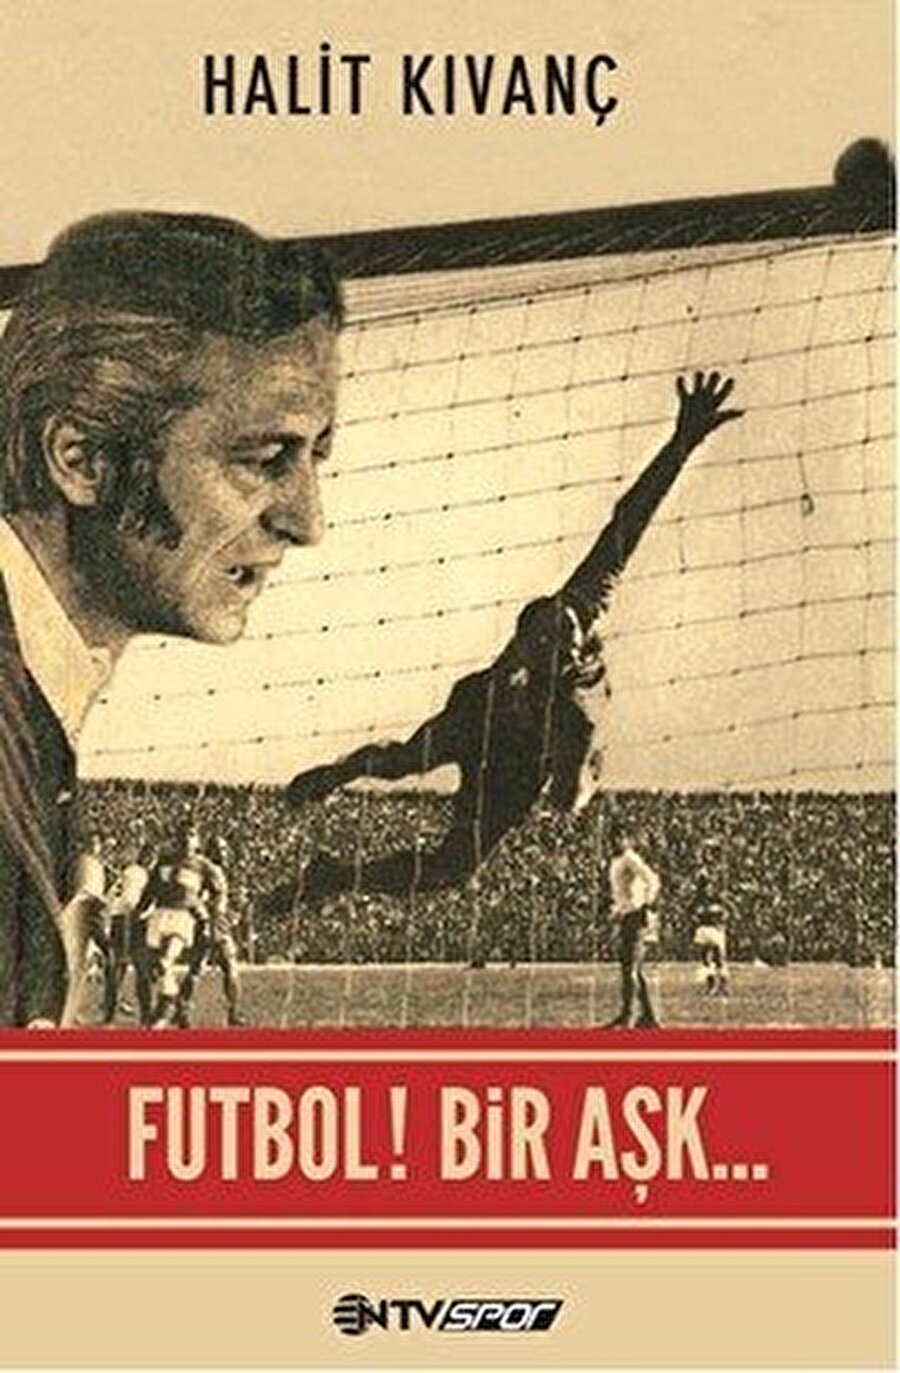 Futbol Bir Aşk

                                    Yazar: Halit Kıvanç

 Futbol Bir Aşk; Türk spor gazeteciliğin en eski isimlerinden biri olan Halit Kıvanç'ın kariyeri boyunca tanık olduğu olayları kaleme aldığı eser. 

                                